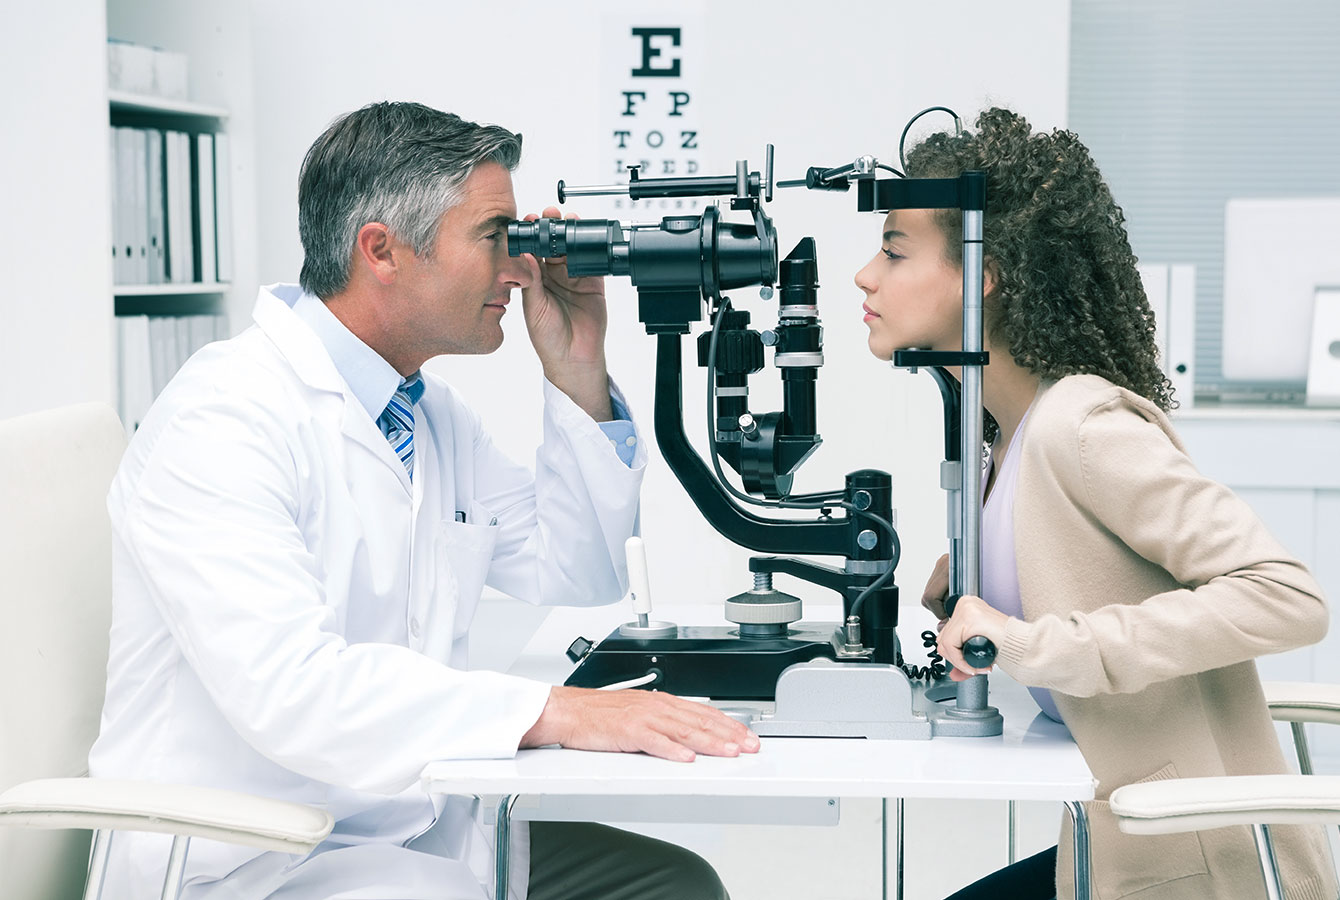 Professjonist tal-kura tal-għajnejn qed jittestja għajnejn pazjenti mara fil-klinika tal-optometrist.